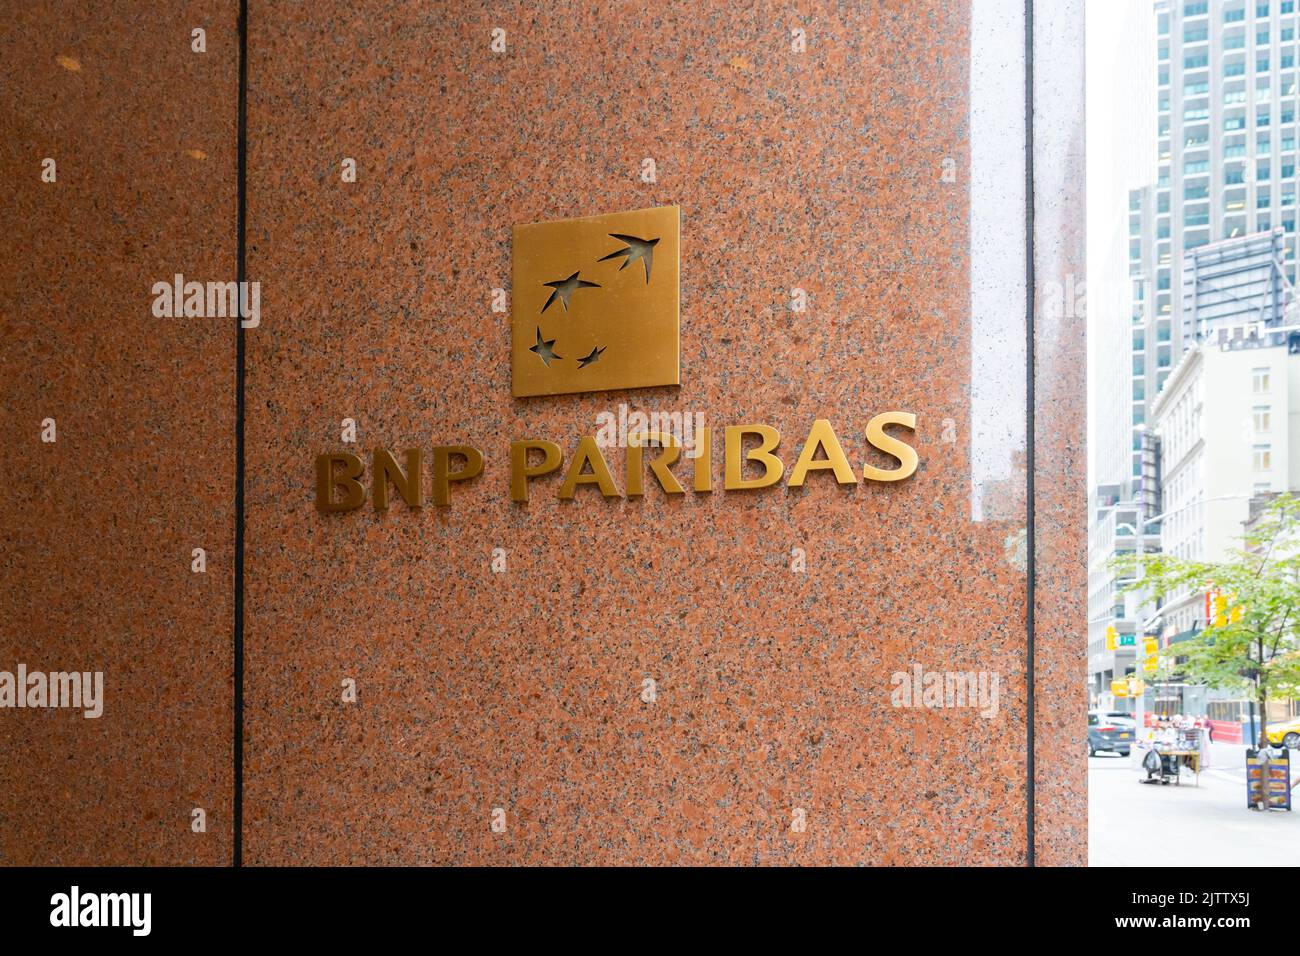 Nueva York, NY, EE.UU. - 17 de agosto de 2022: Logotipo de la compañía BNP Paribas en su edificio de oficinas en Nueva York, NY, EE.UU. Foto de stock